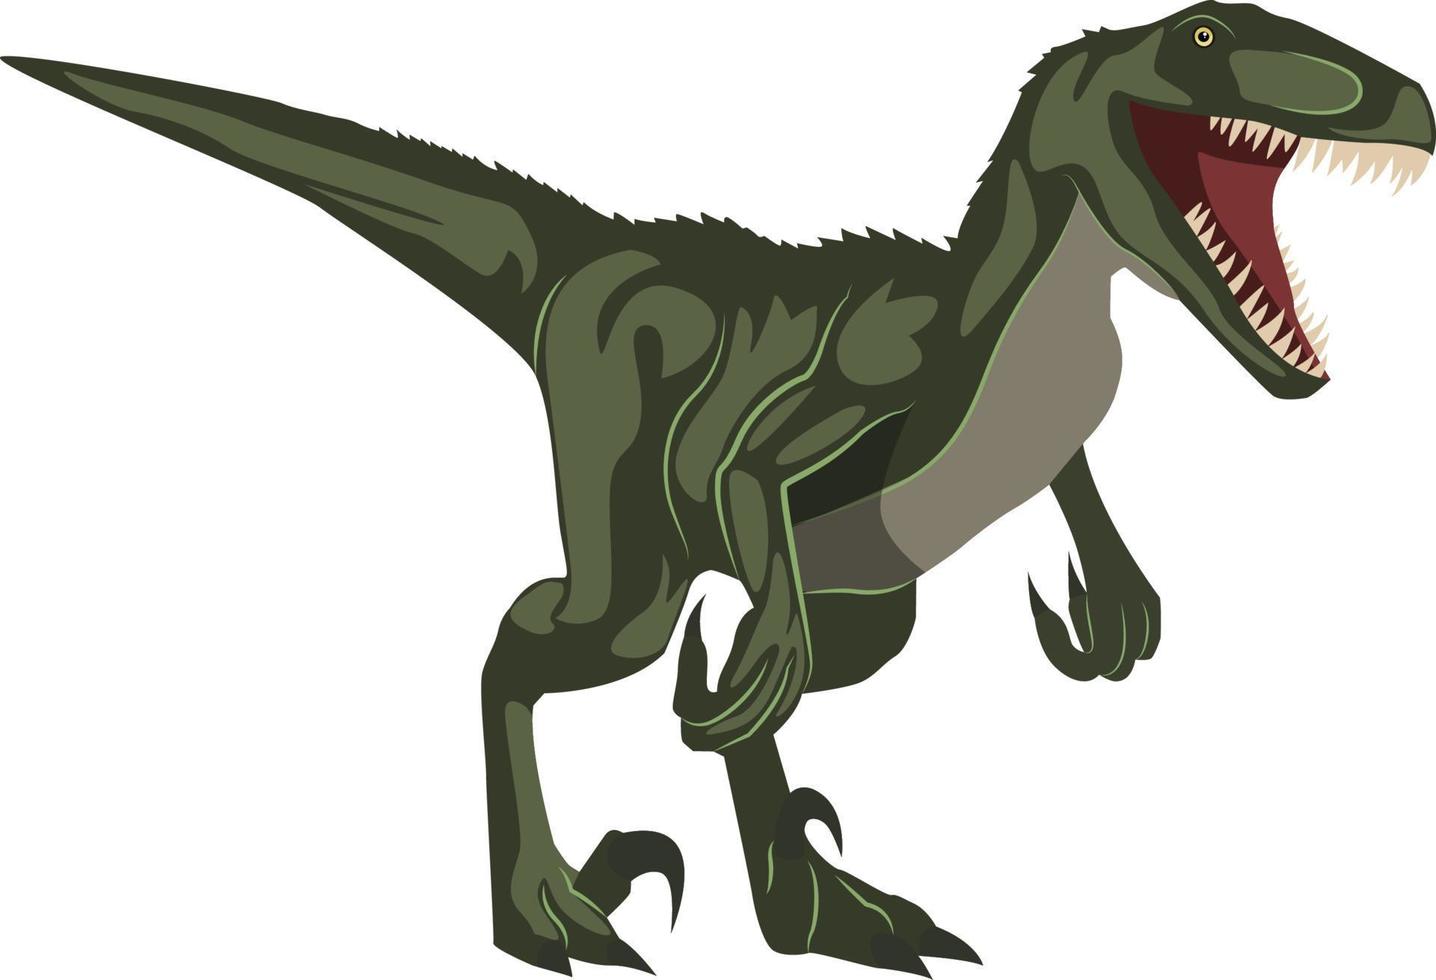 Velociraptor, illustration, vector on white background.